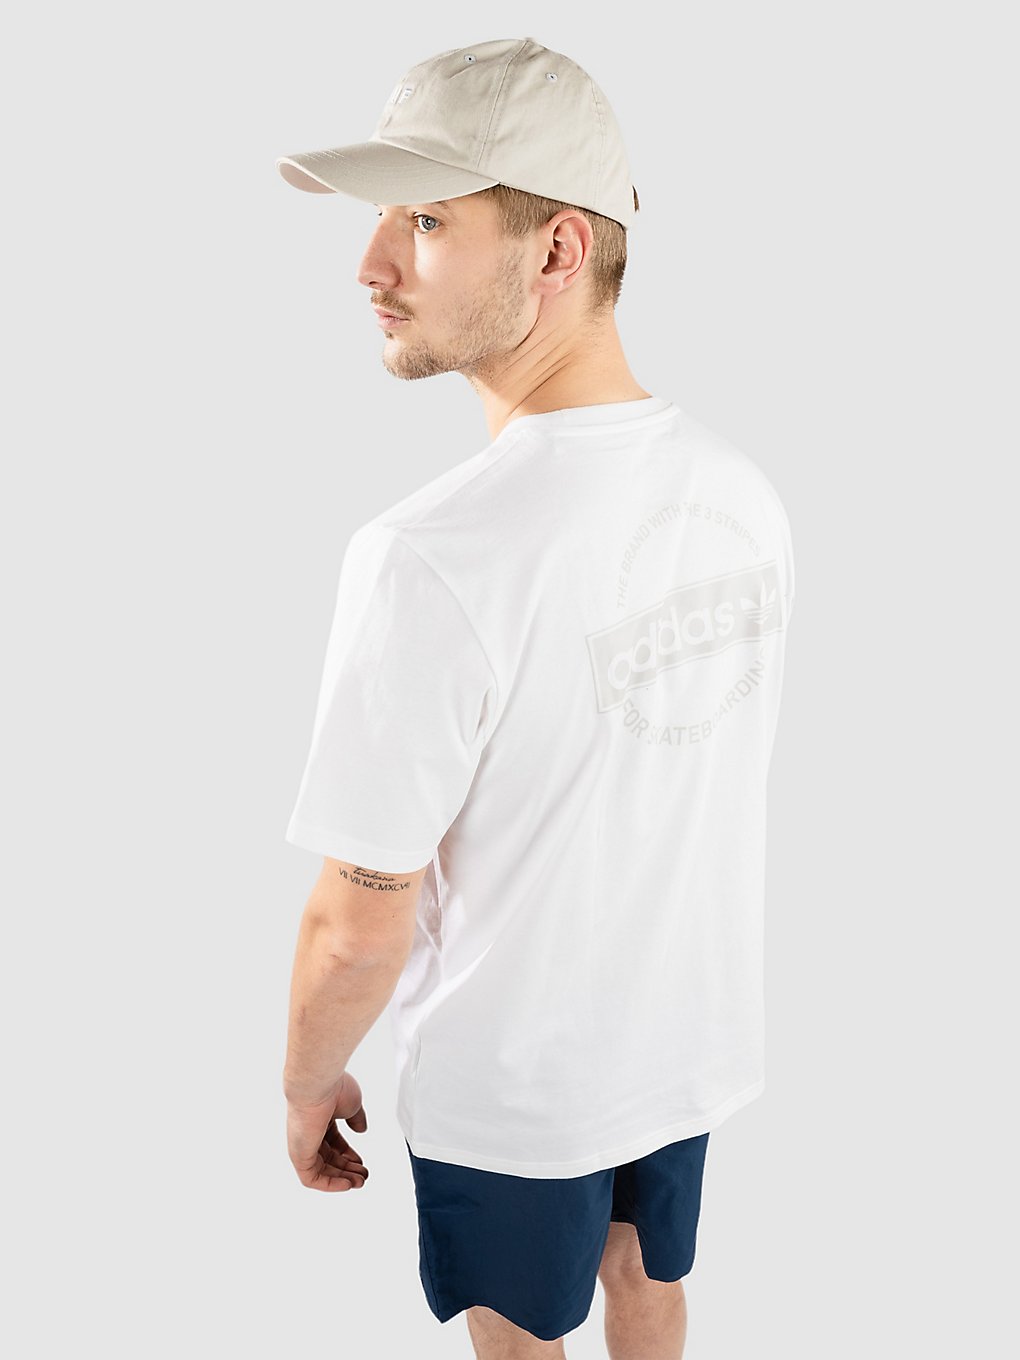 adidas Skateboarding 4.0 Circle T-Shirt wit